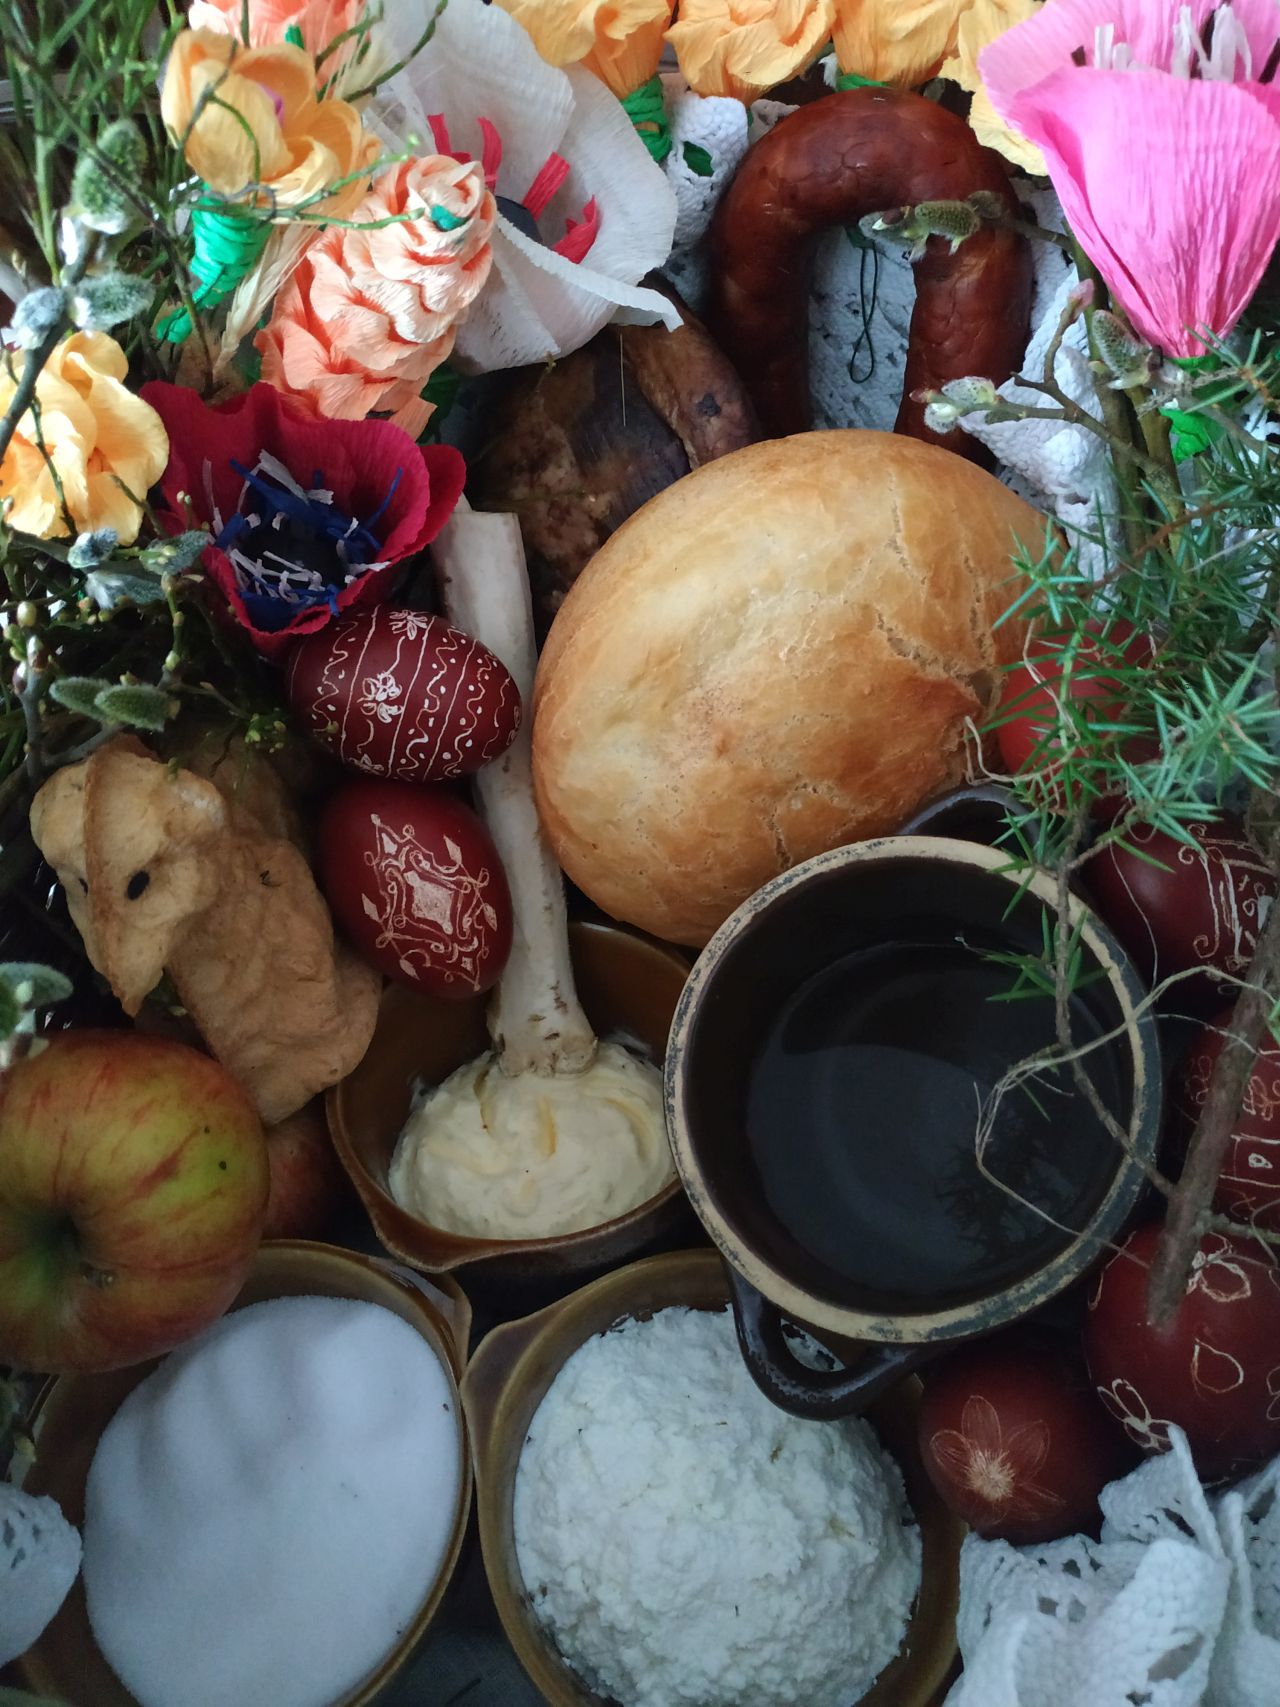 wnętrze koszyka z góry, w środku chleb, baranek, pisanki, kiełbasa, boczek, jabłko, naczynia z masłem, wodą, solą i serem, wokół są kwiaty z bibułył